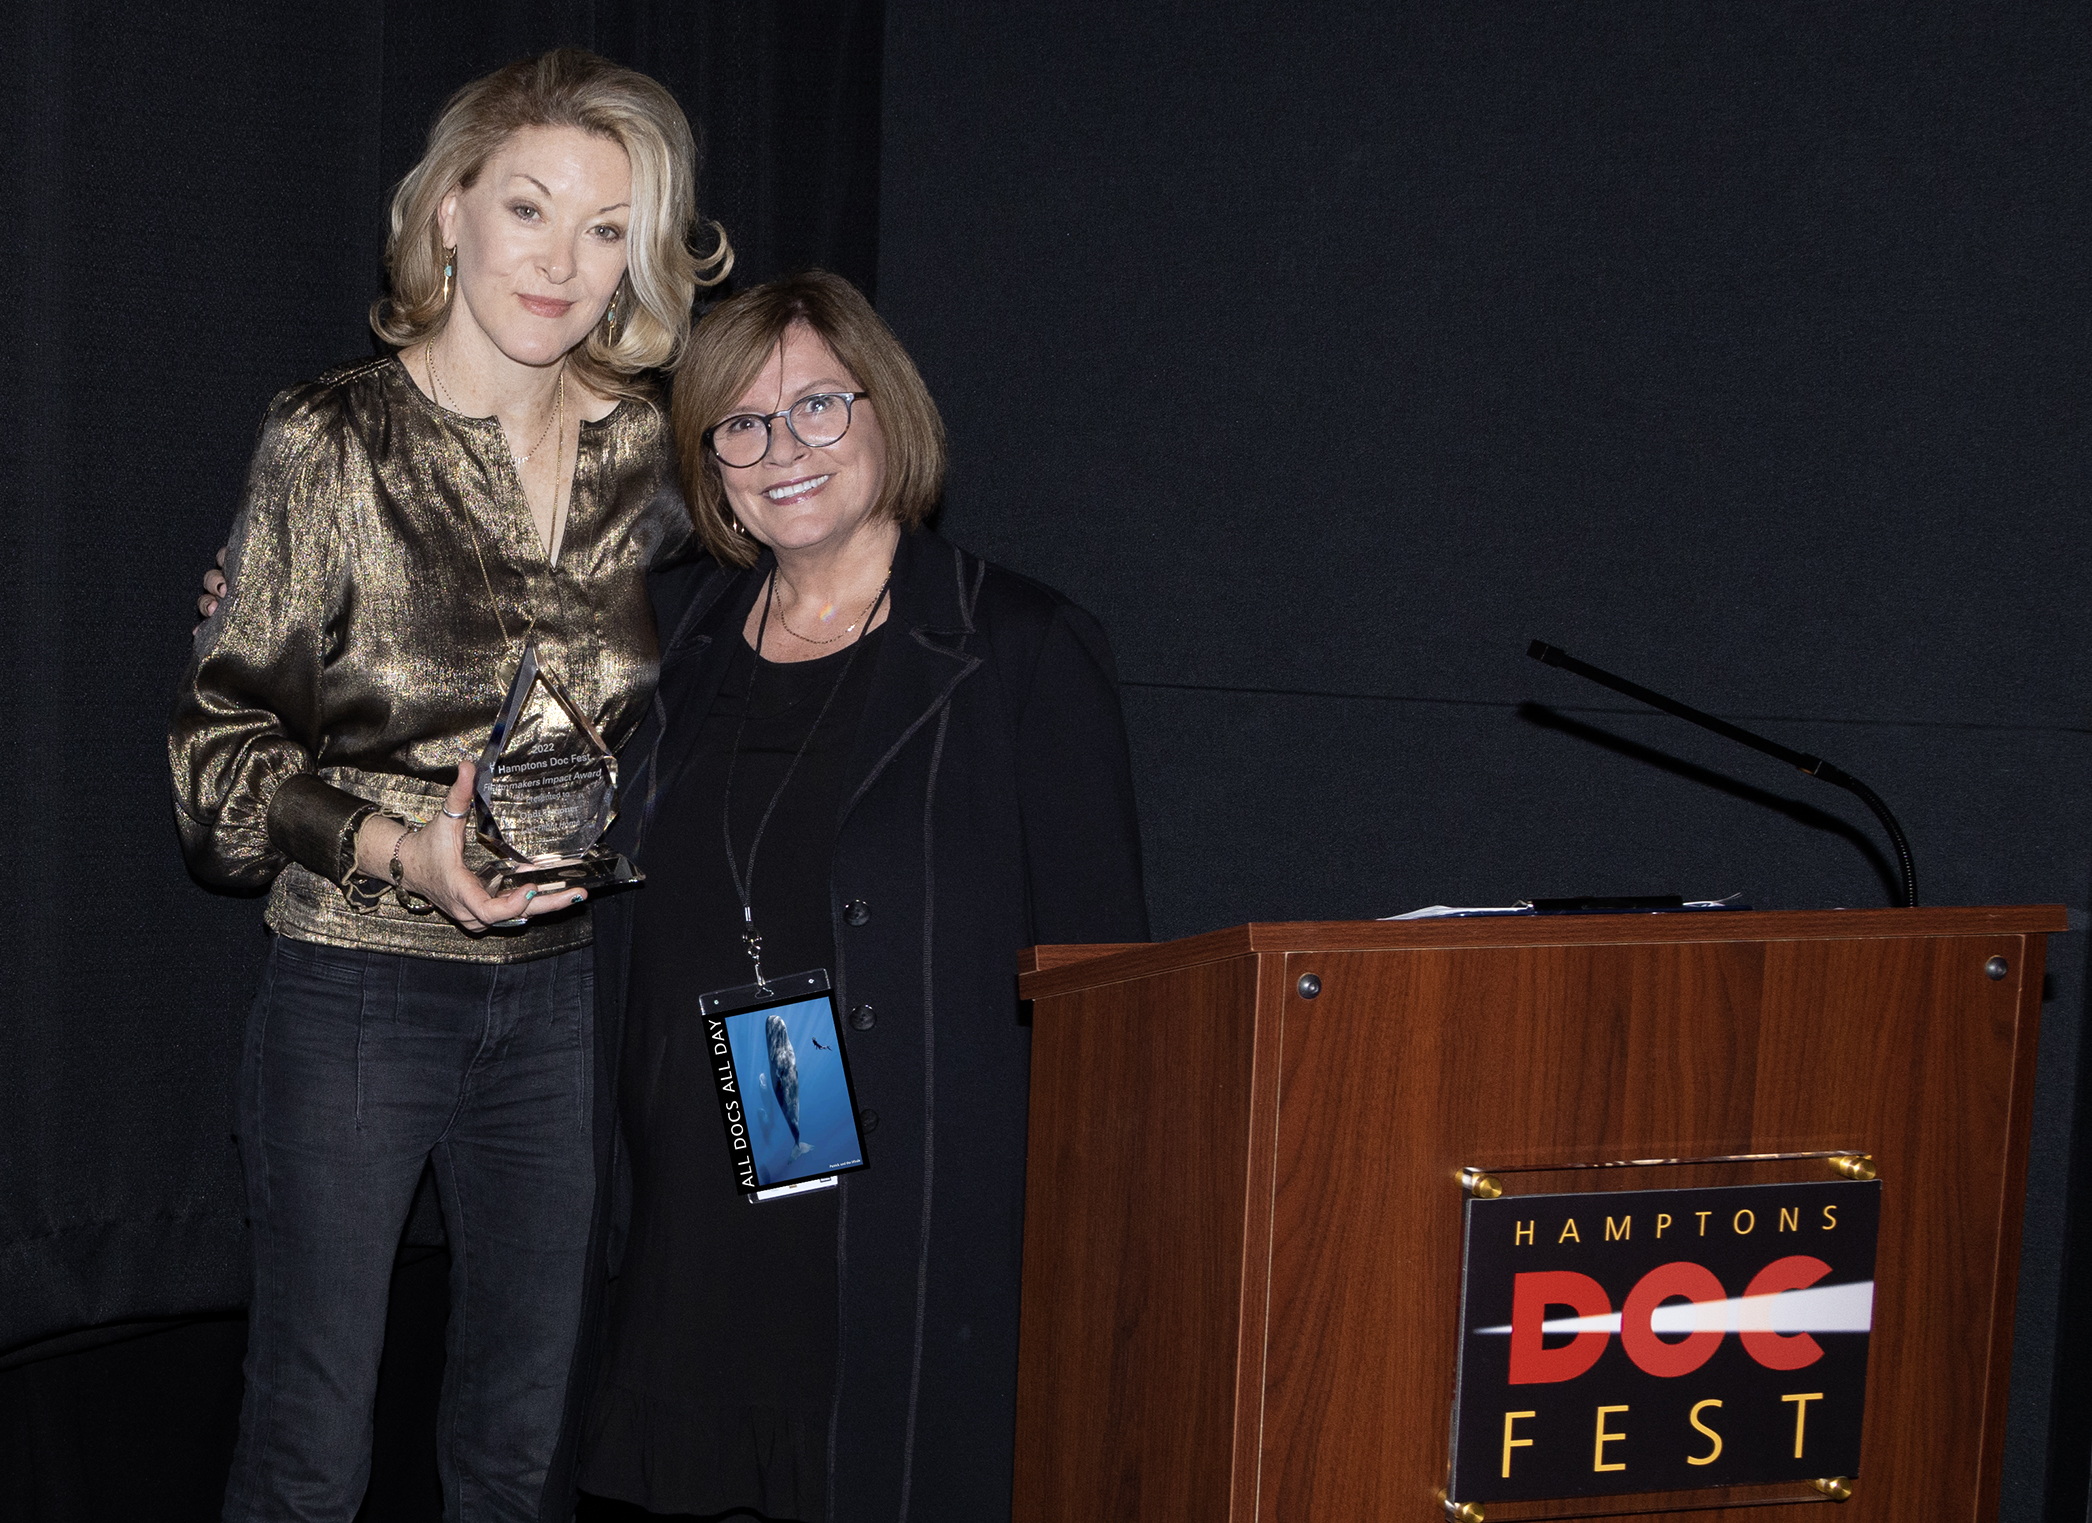 Ondi Timoner receives her award presented by Karen Arikian for "Last Flight Home"